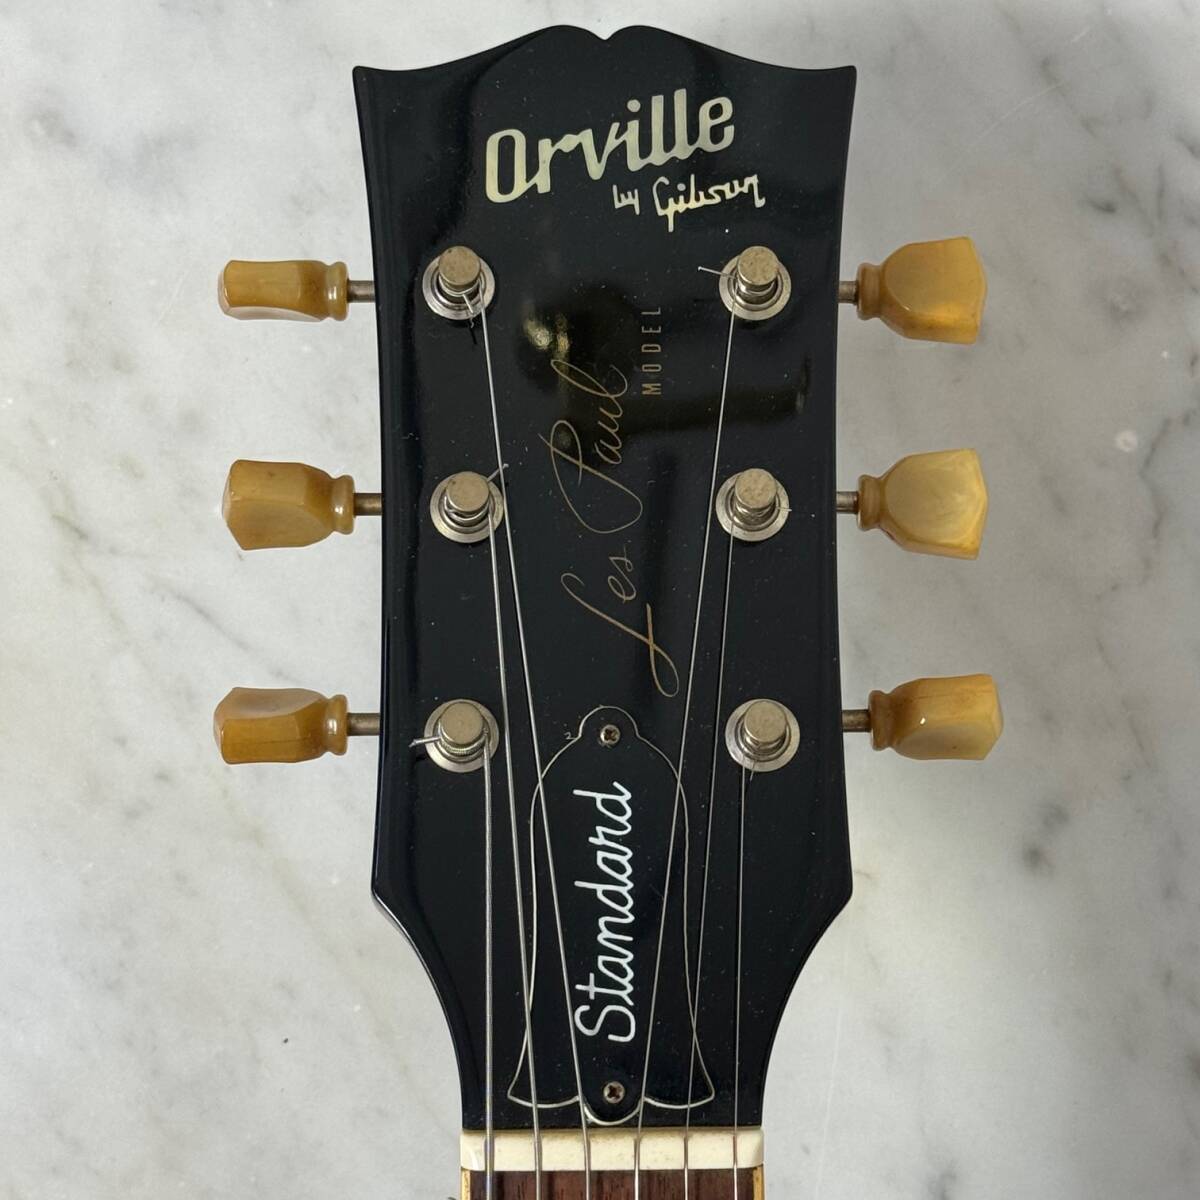 上位モデル 無垢 Orville by Gibson Les Paul Standard 1992年 ディープジョイント Gibson 刻印 PAF オービル by ギブソンの画像3